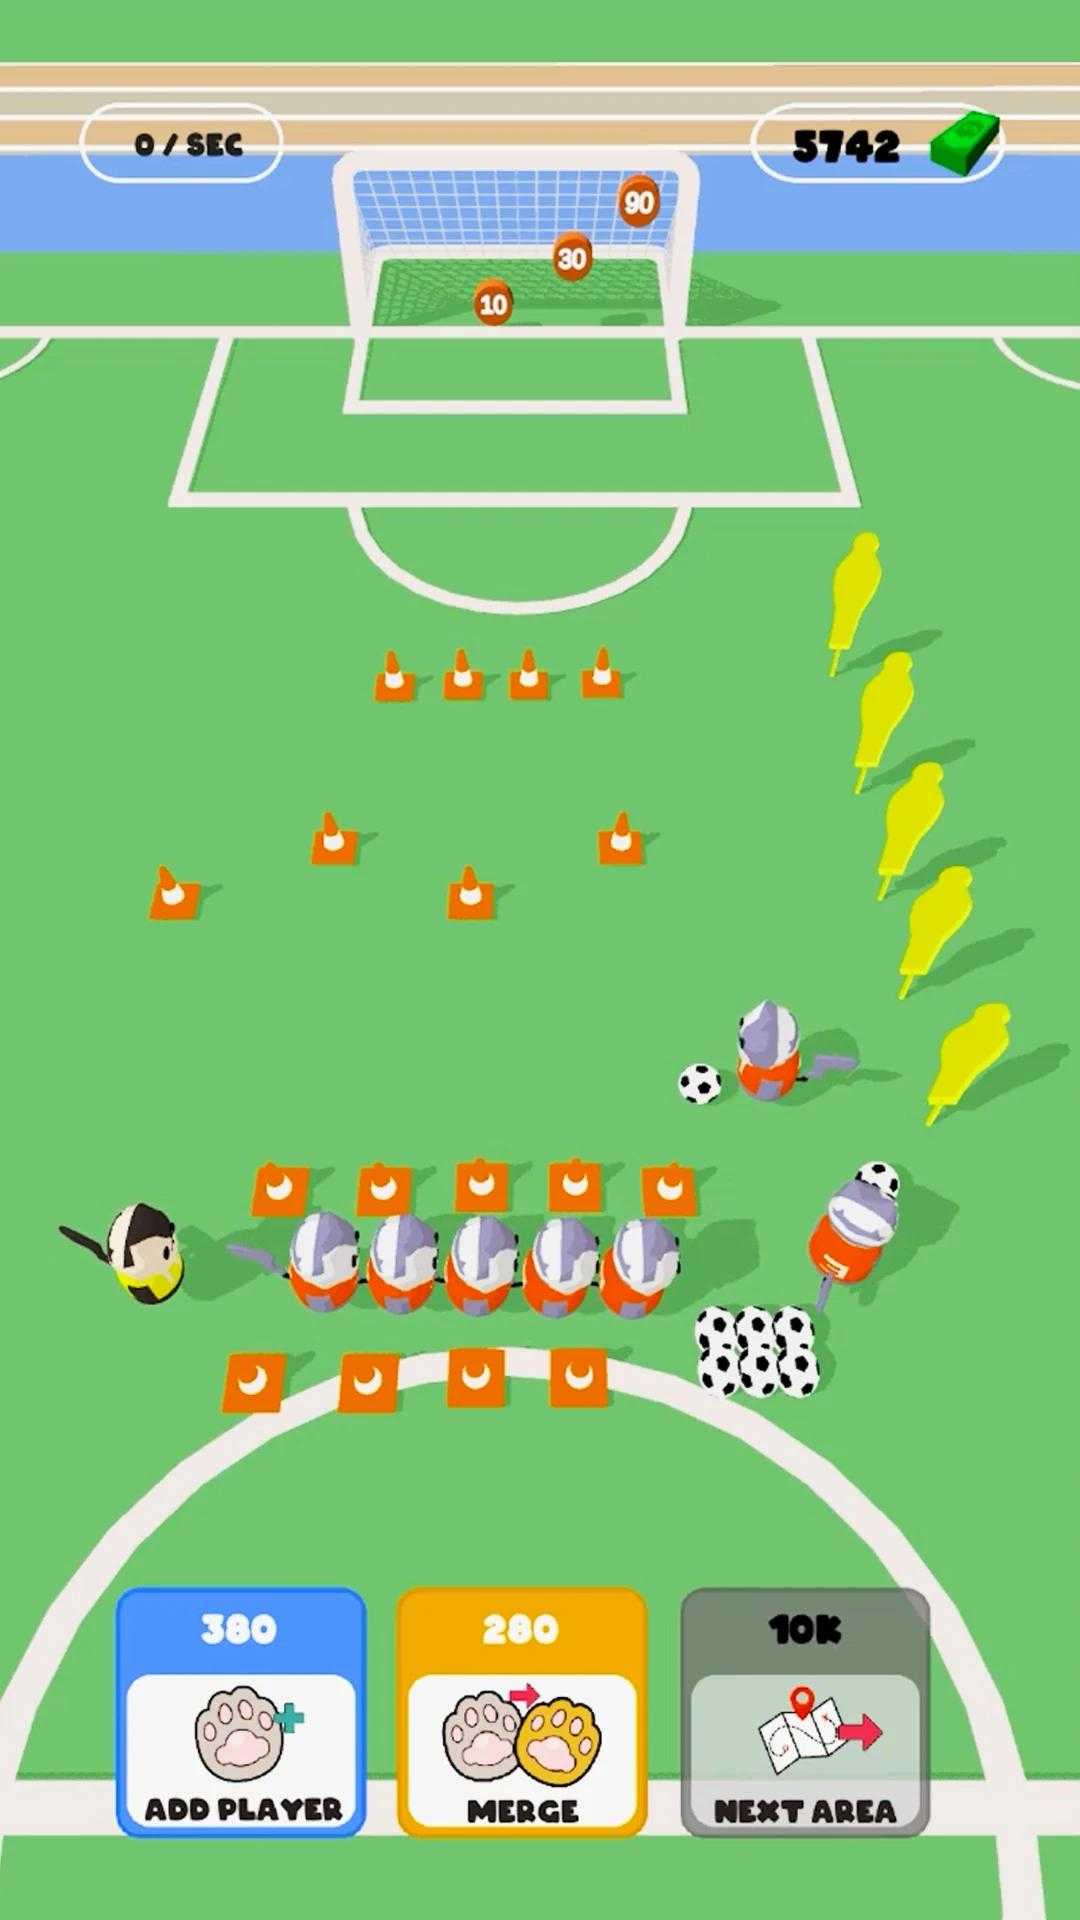 猫足球训练游戏下载,猫足球训练游戏安卓版 v1.0